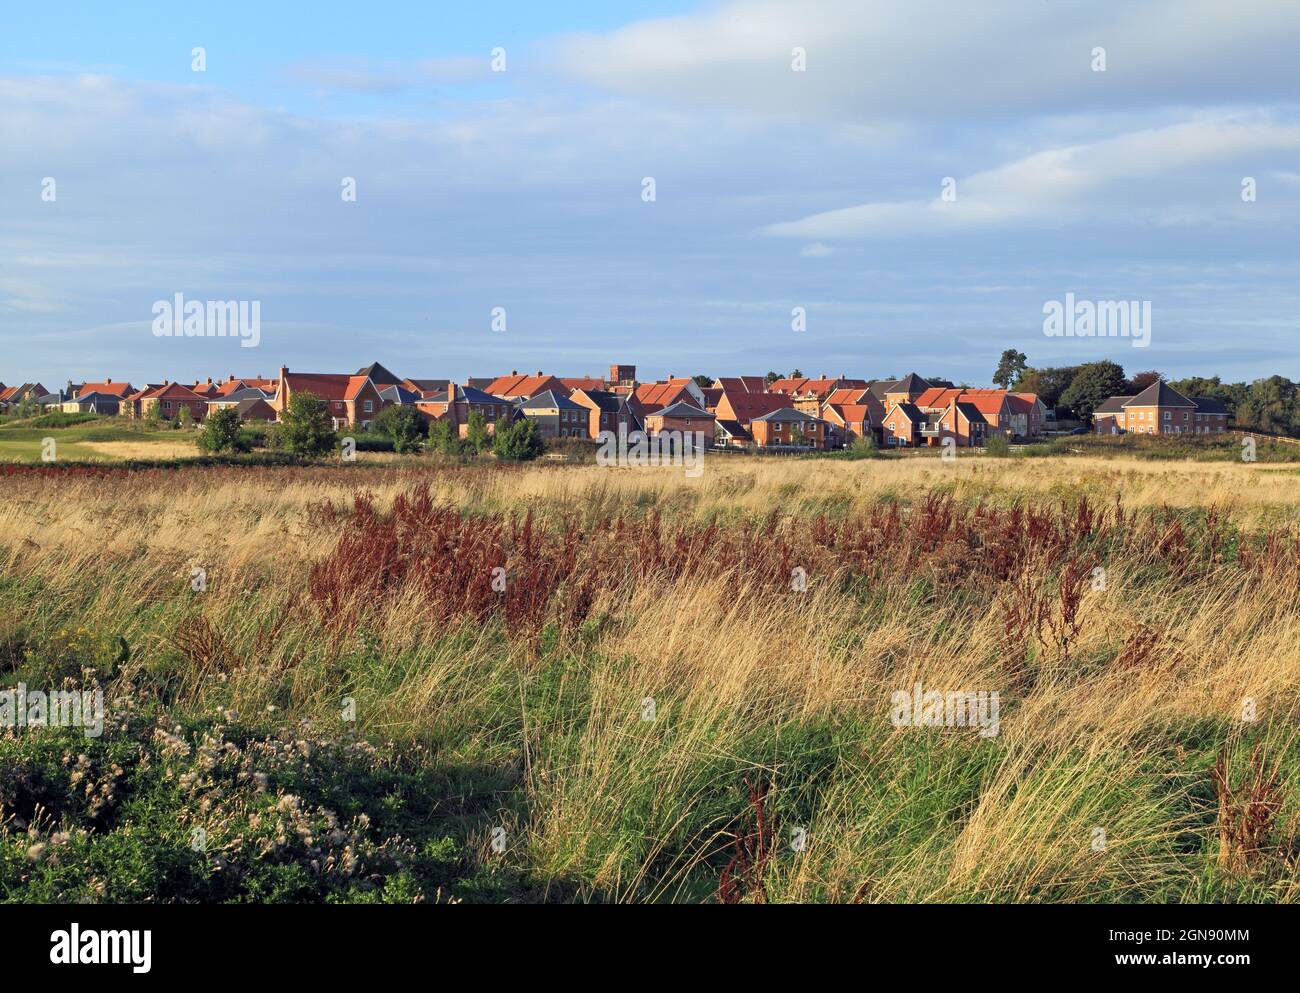 Butterfield Meadow, Heacham, Hunstanton, nouveau développement de logements, domaine, Sur des terres agricoles antérieures, en train de disparaître en milieu rural en Angleterre Banque D'Images